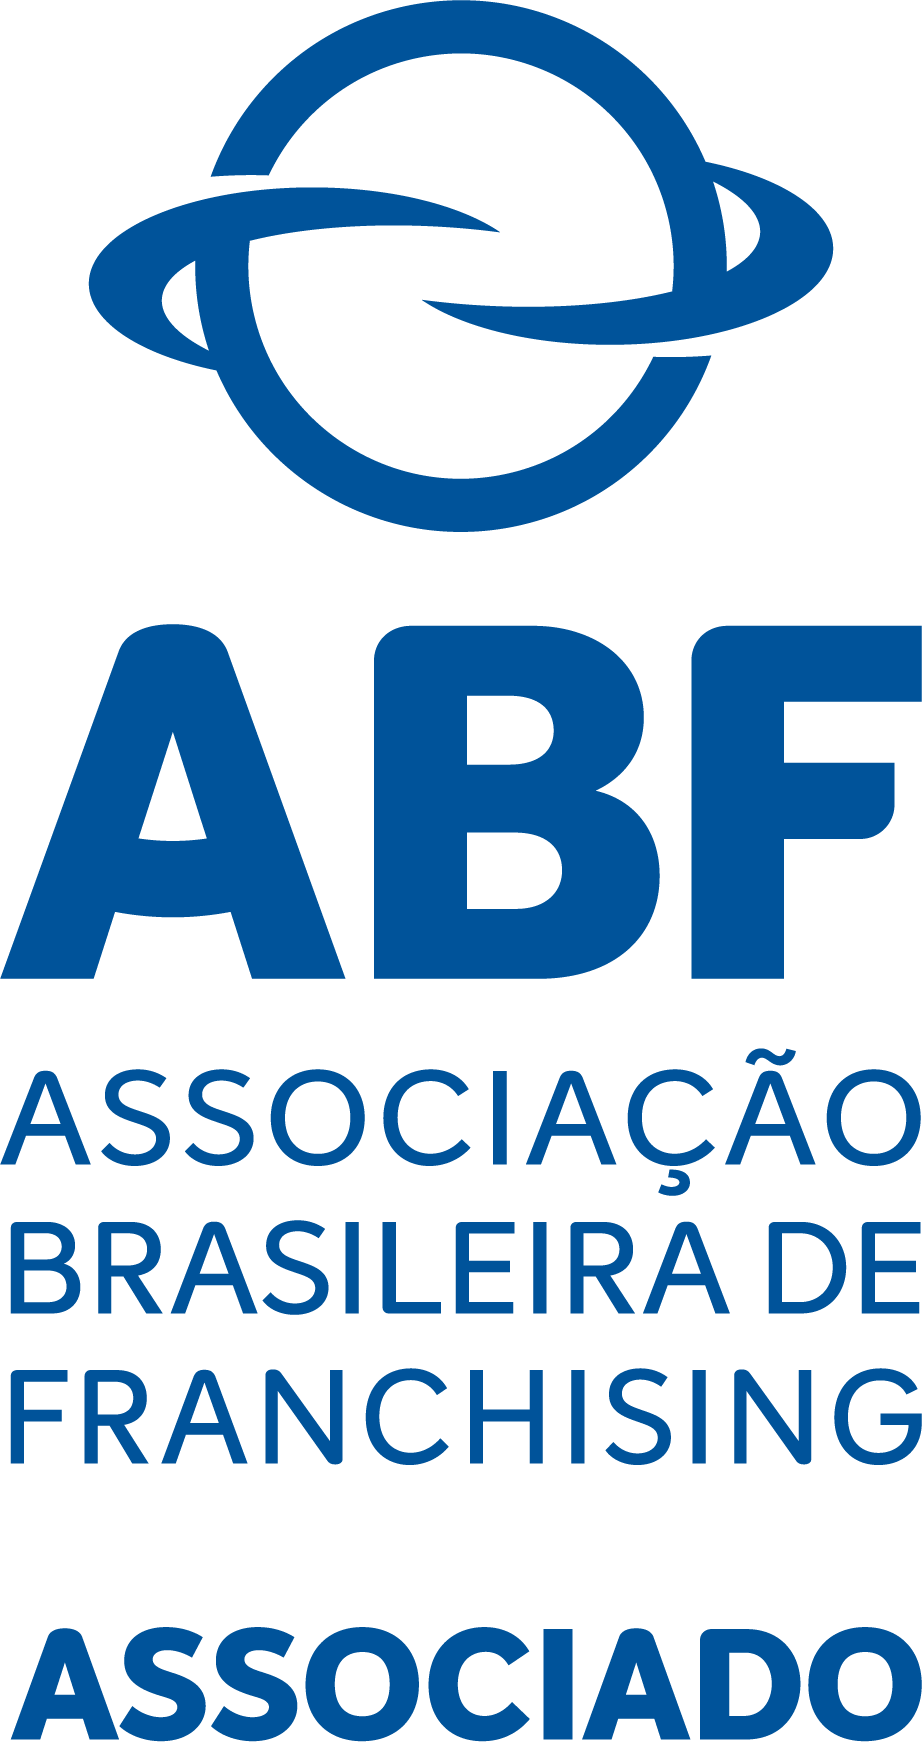 ABF - Associação Brasileira de Franchising ASSOCIADO